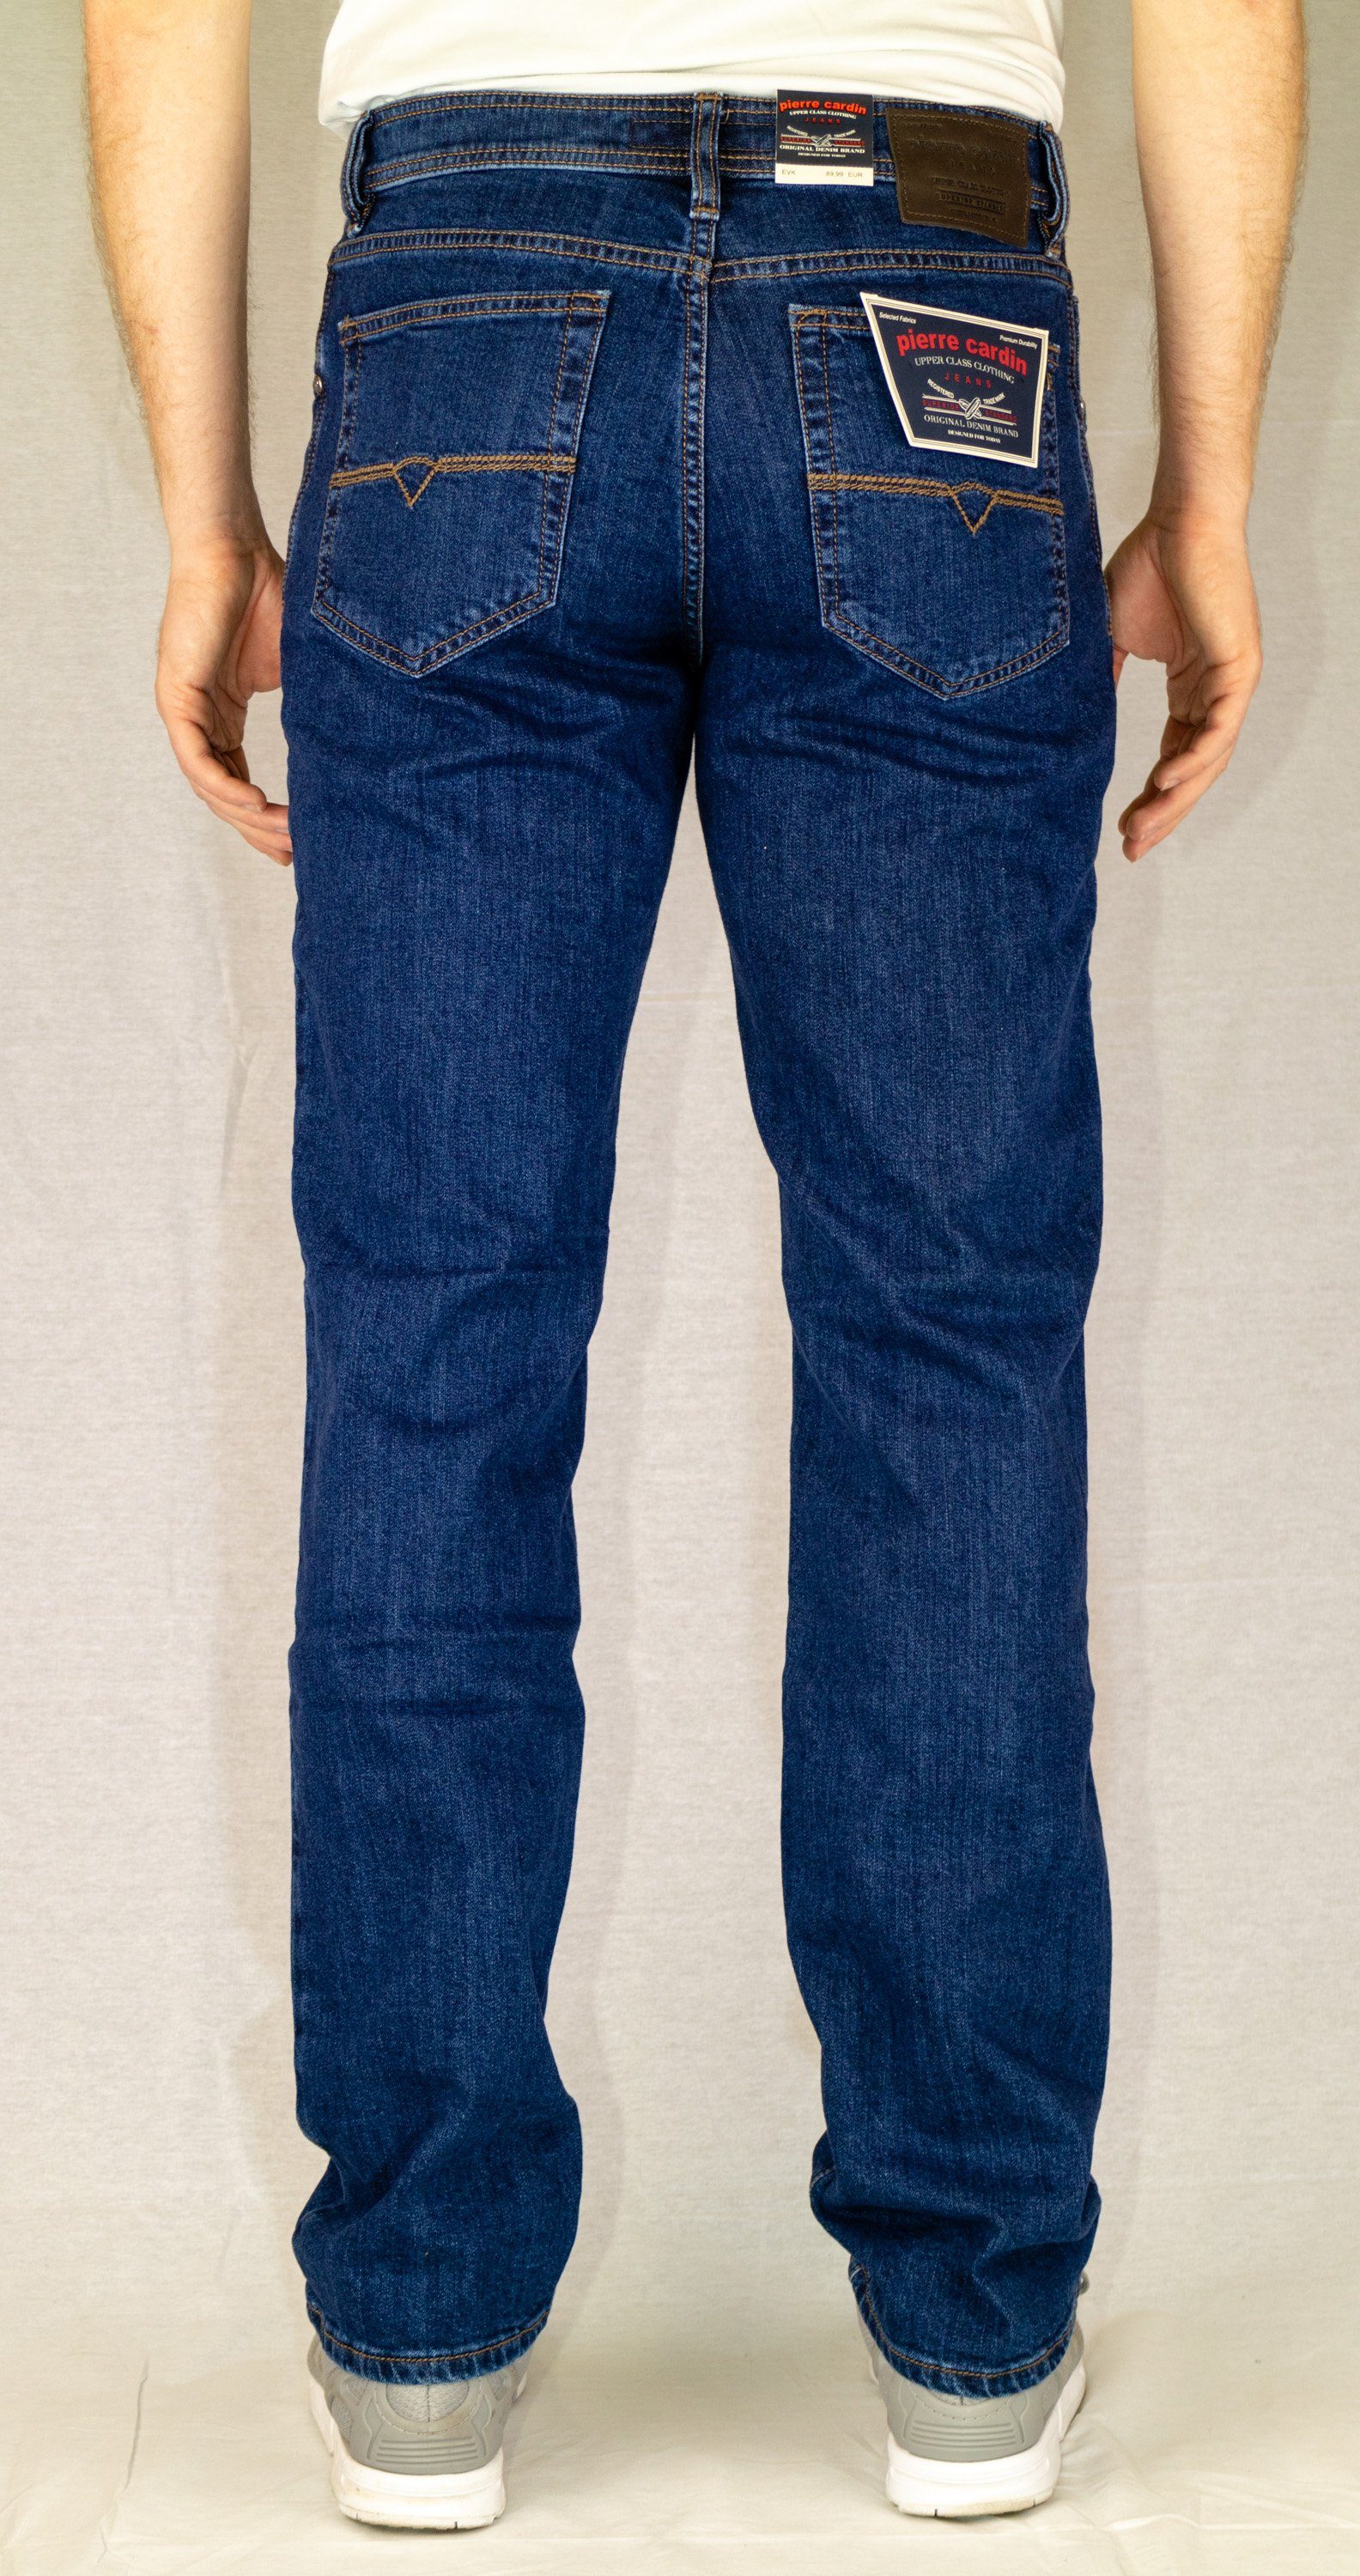 Pierre Cardin 5-Pocket-Jeans PIERRE CARDIN DIJON night blue 3231 911.47